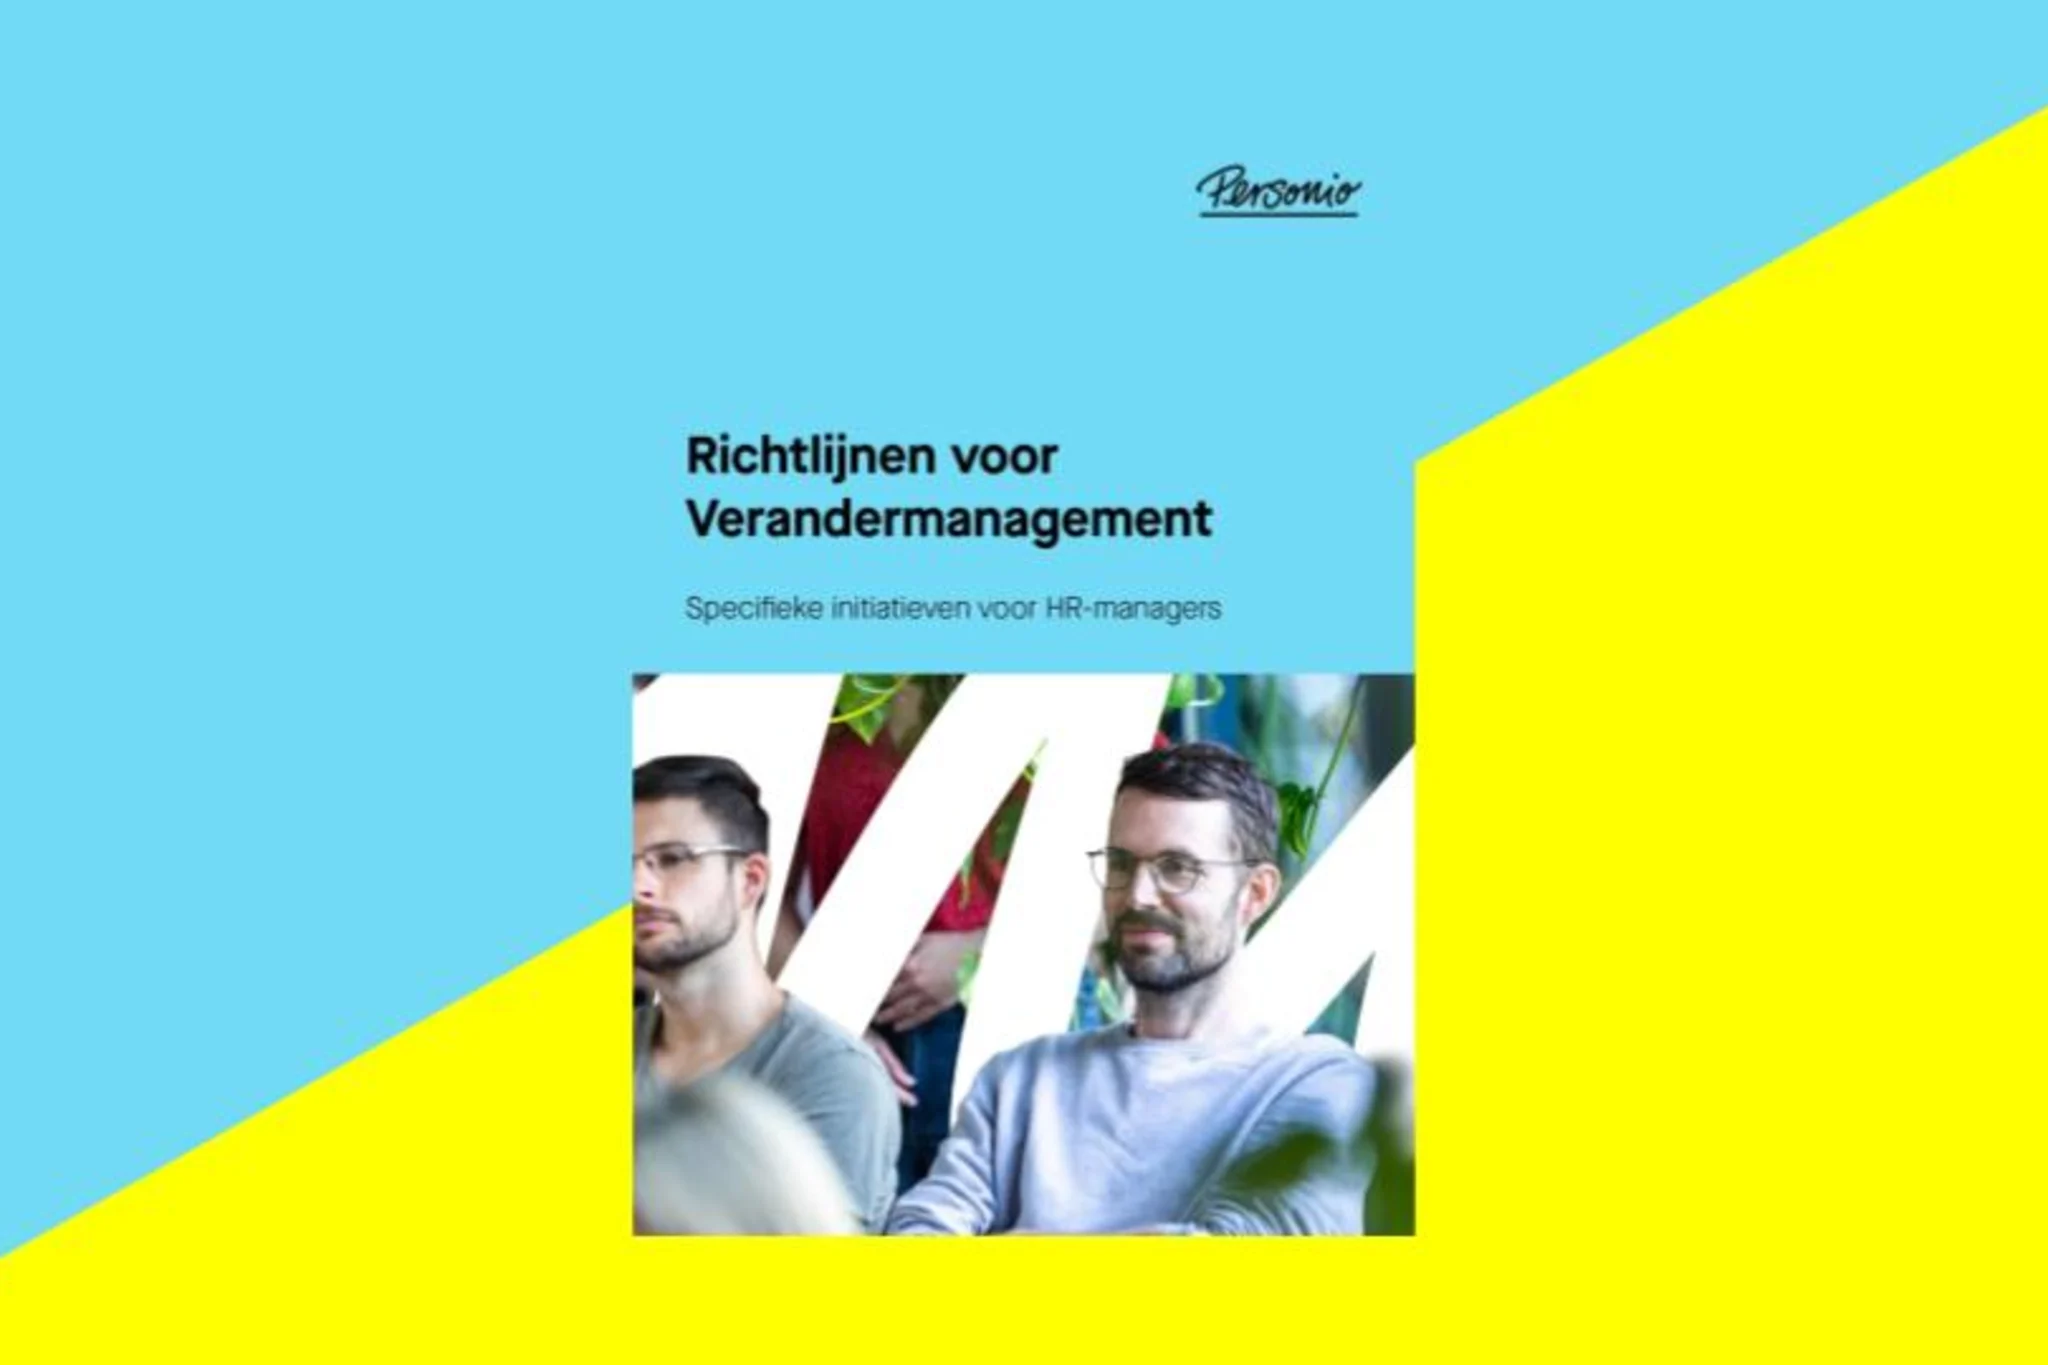 NL_verandermanagement_change_management_sidebar_image